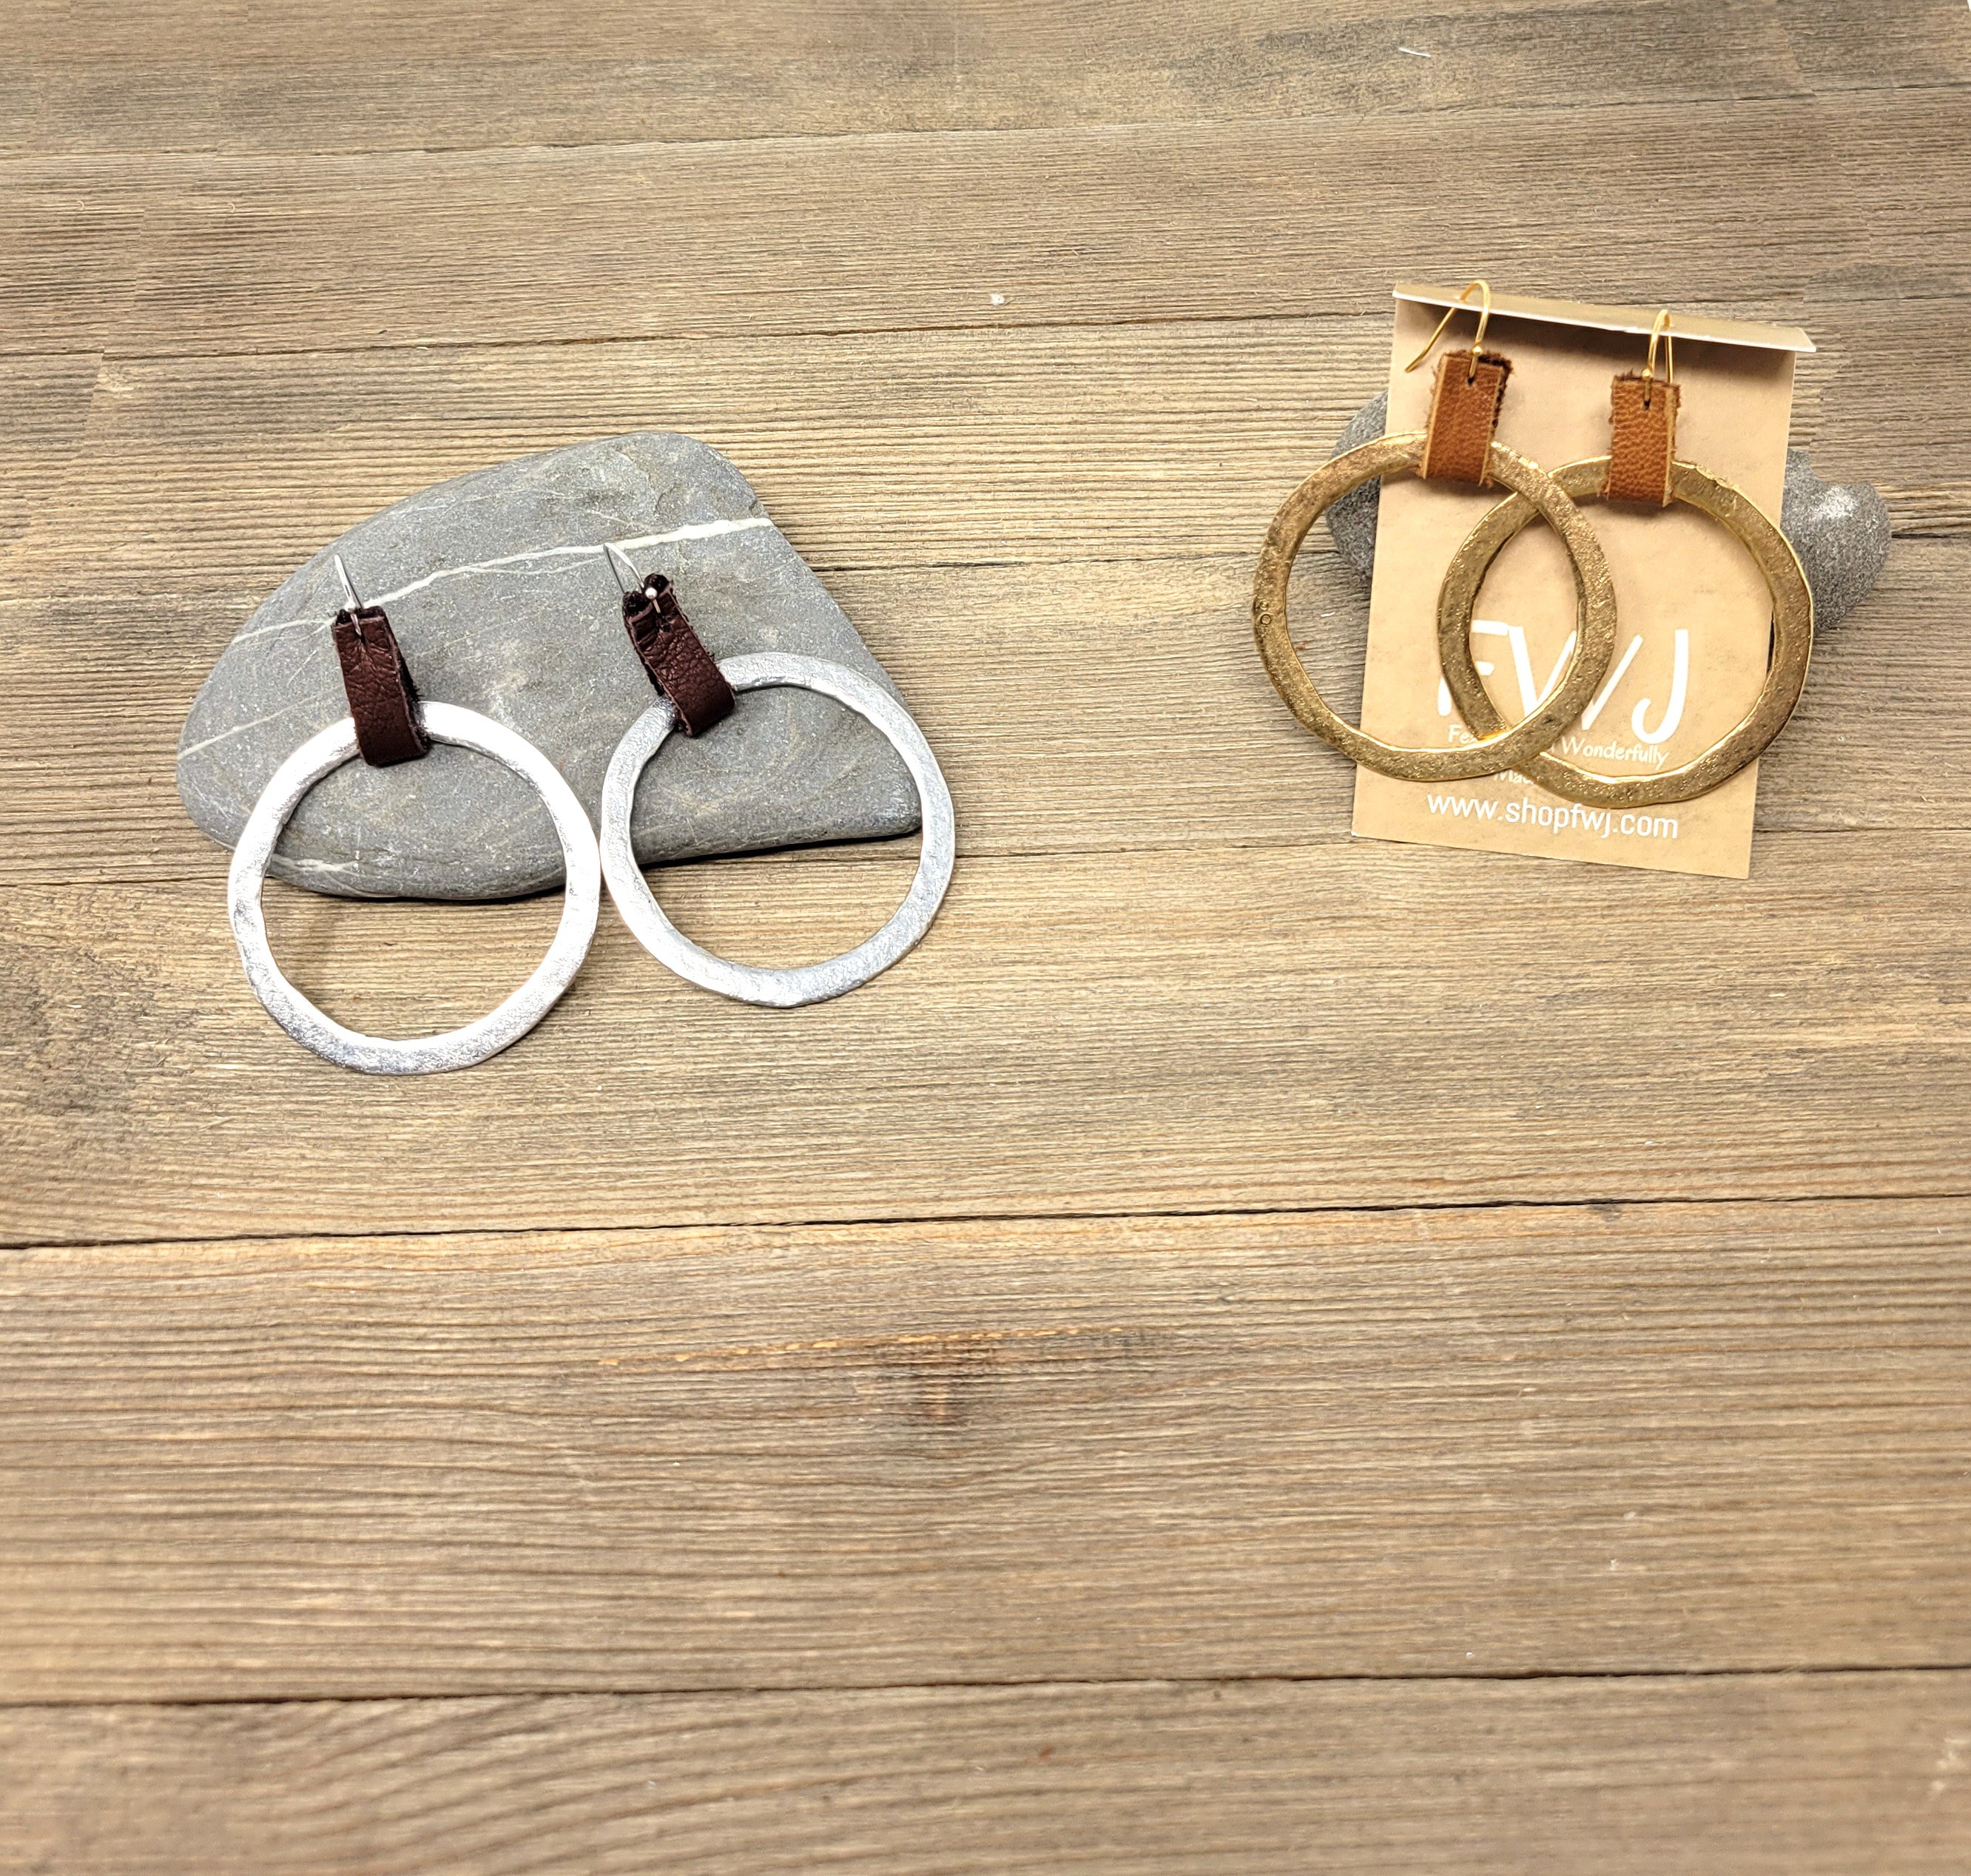 Large organic rustic hoop earrings with leather loop